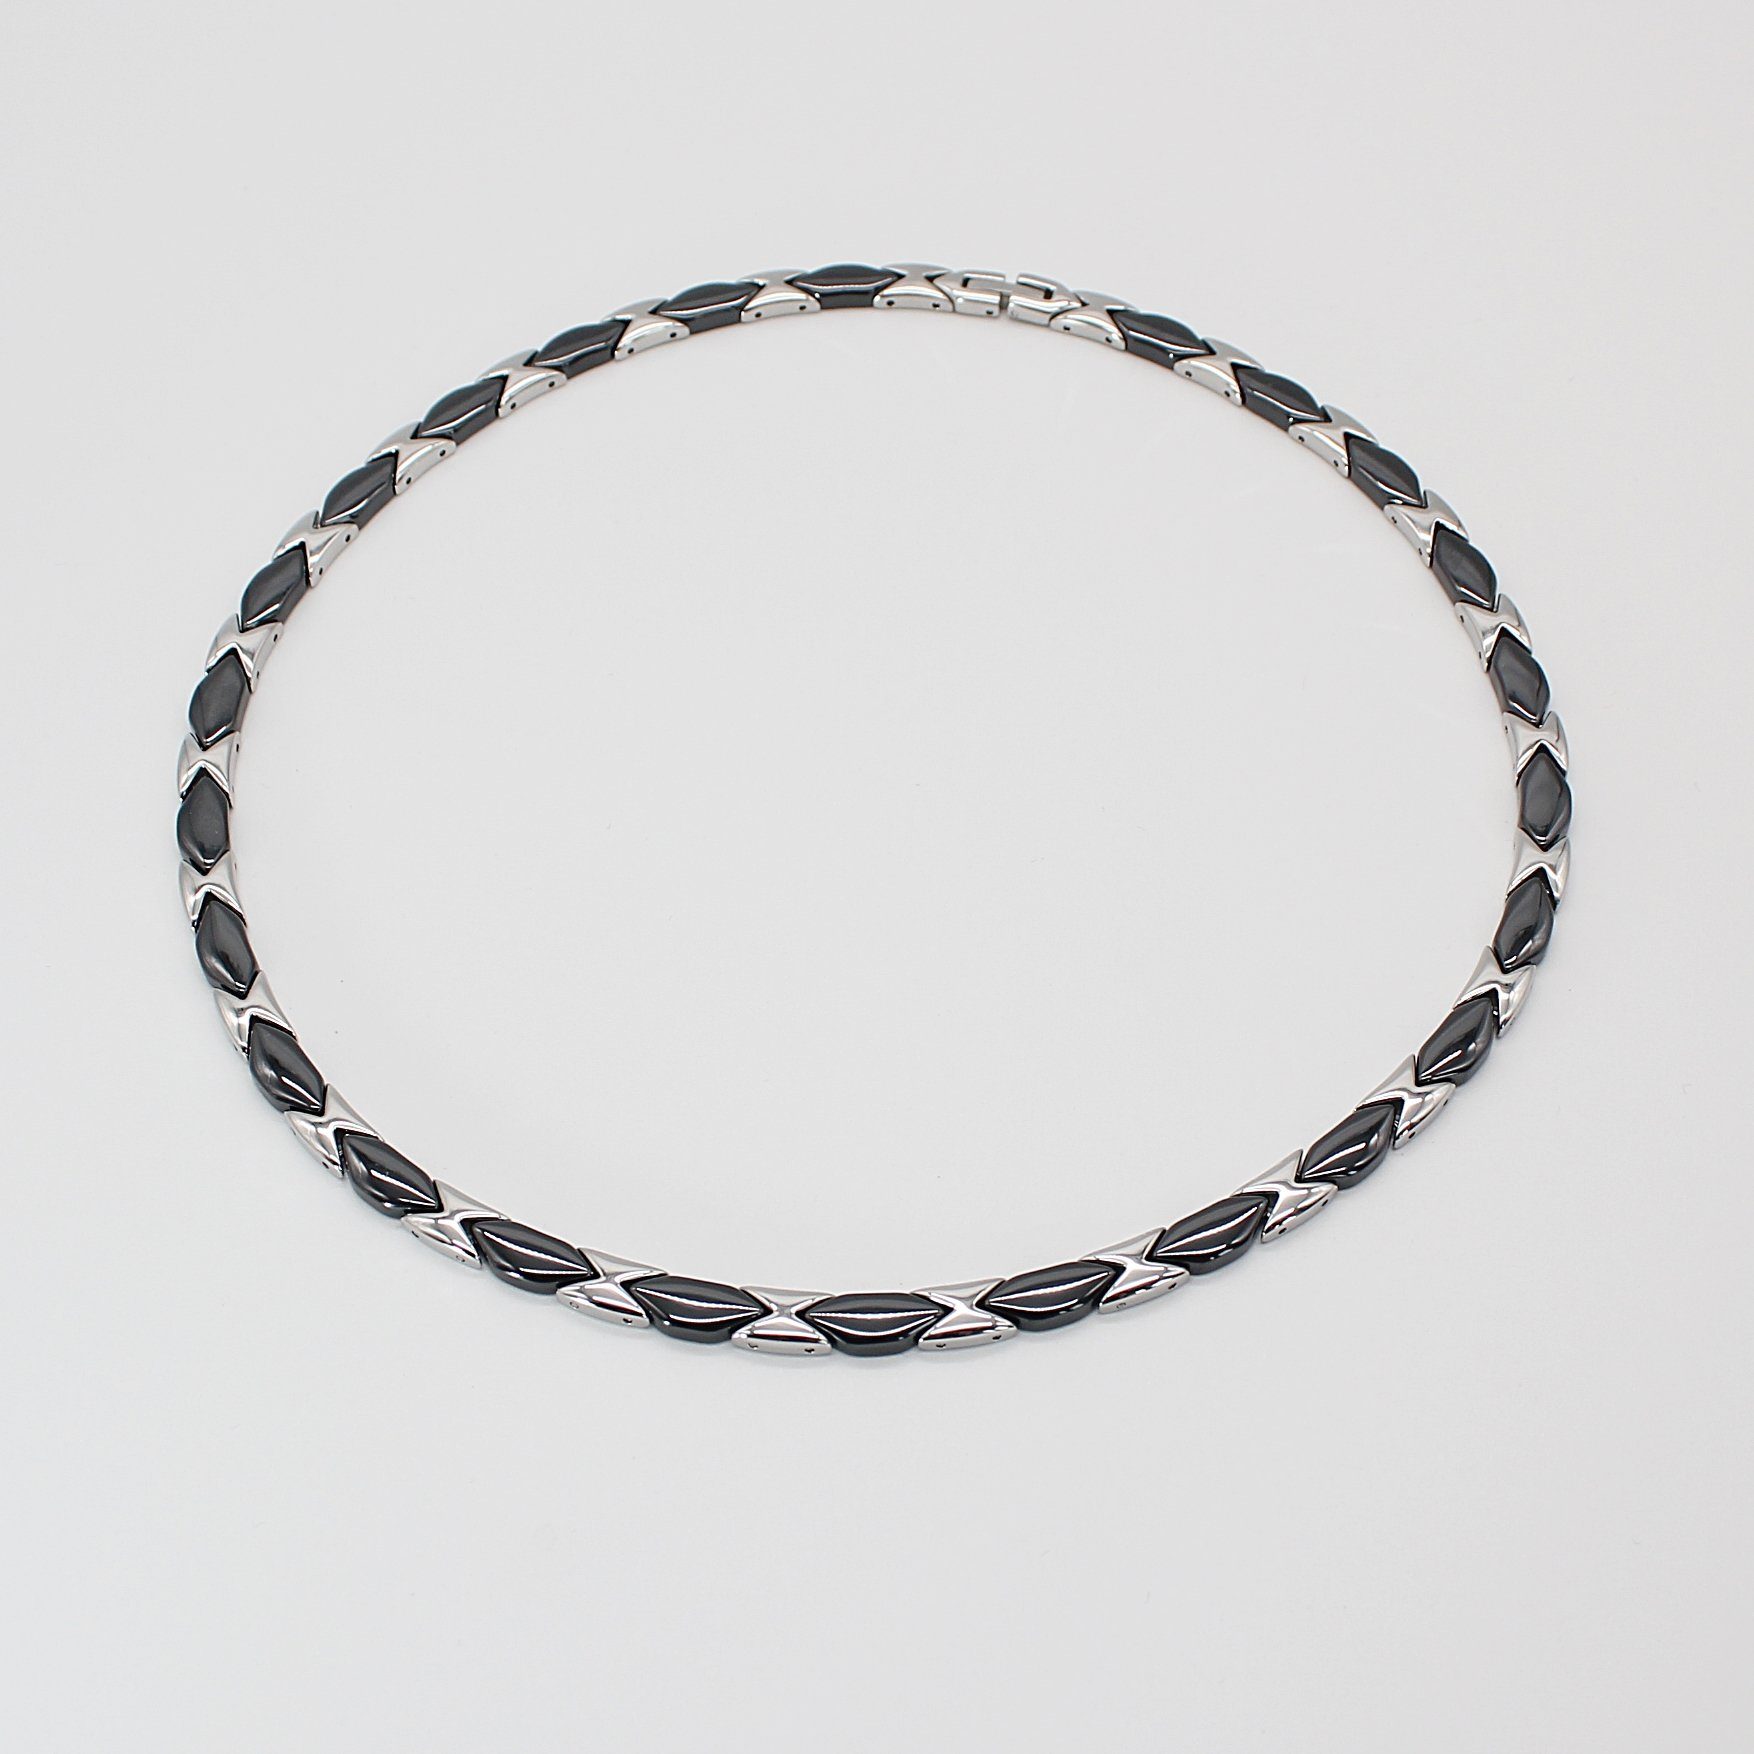 x 6 cm, Geschenkschachtel aus und Keramik Edelstahl Collier Damenkette mm schwarzer Kettenbreite 3 49 ELLAWIL Halskette Collier inklusive / (Kettenlänge mm),